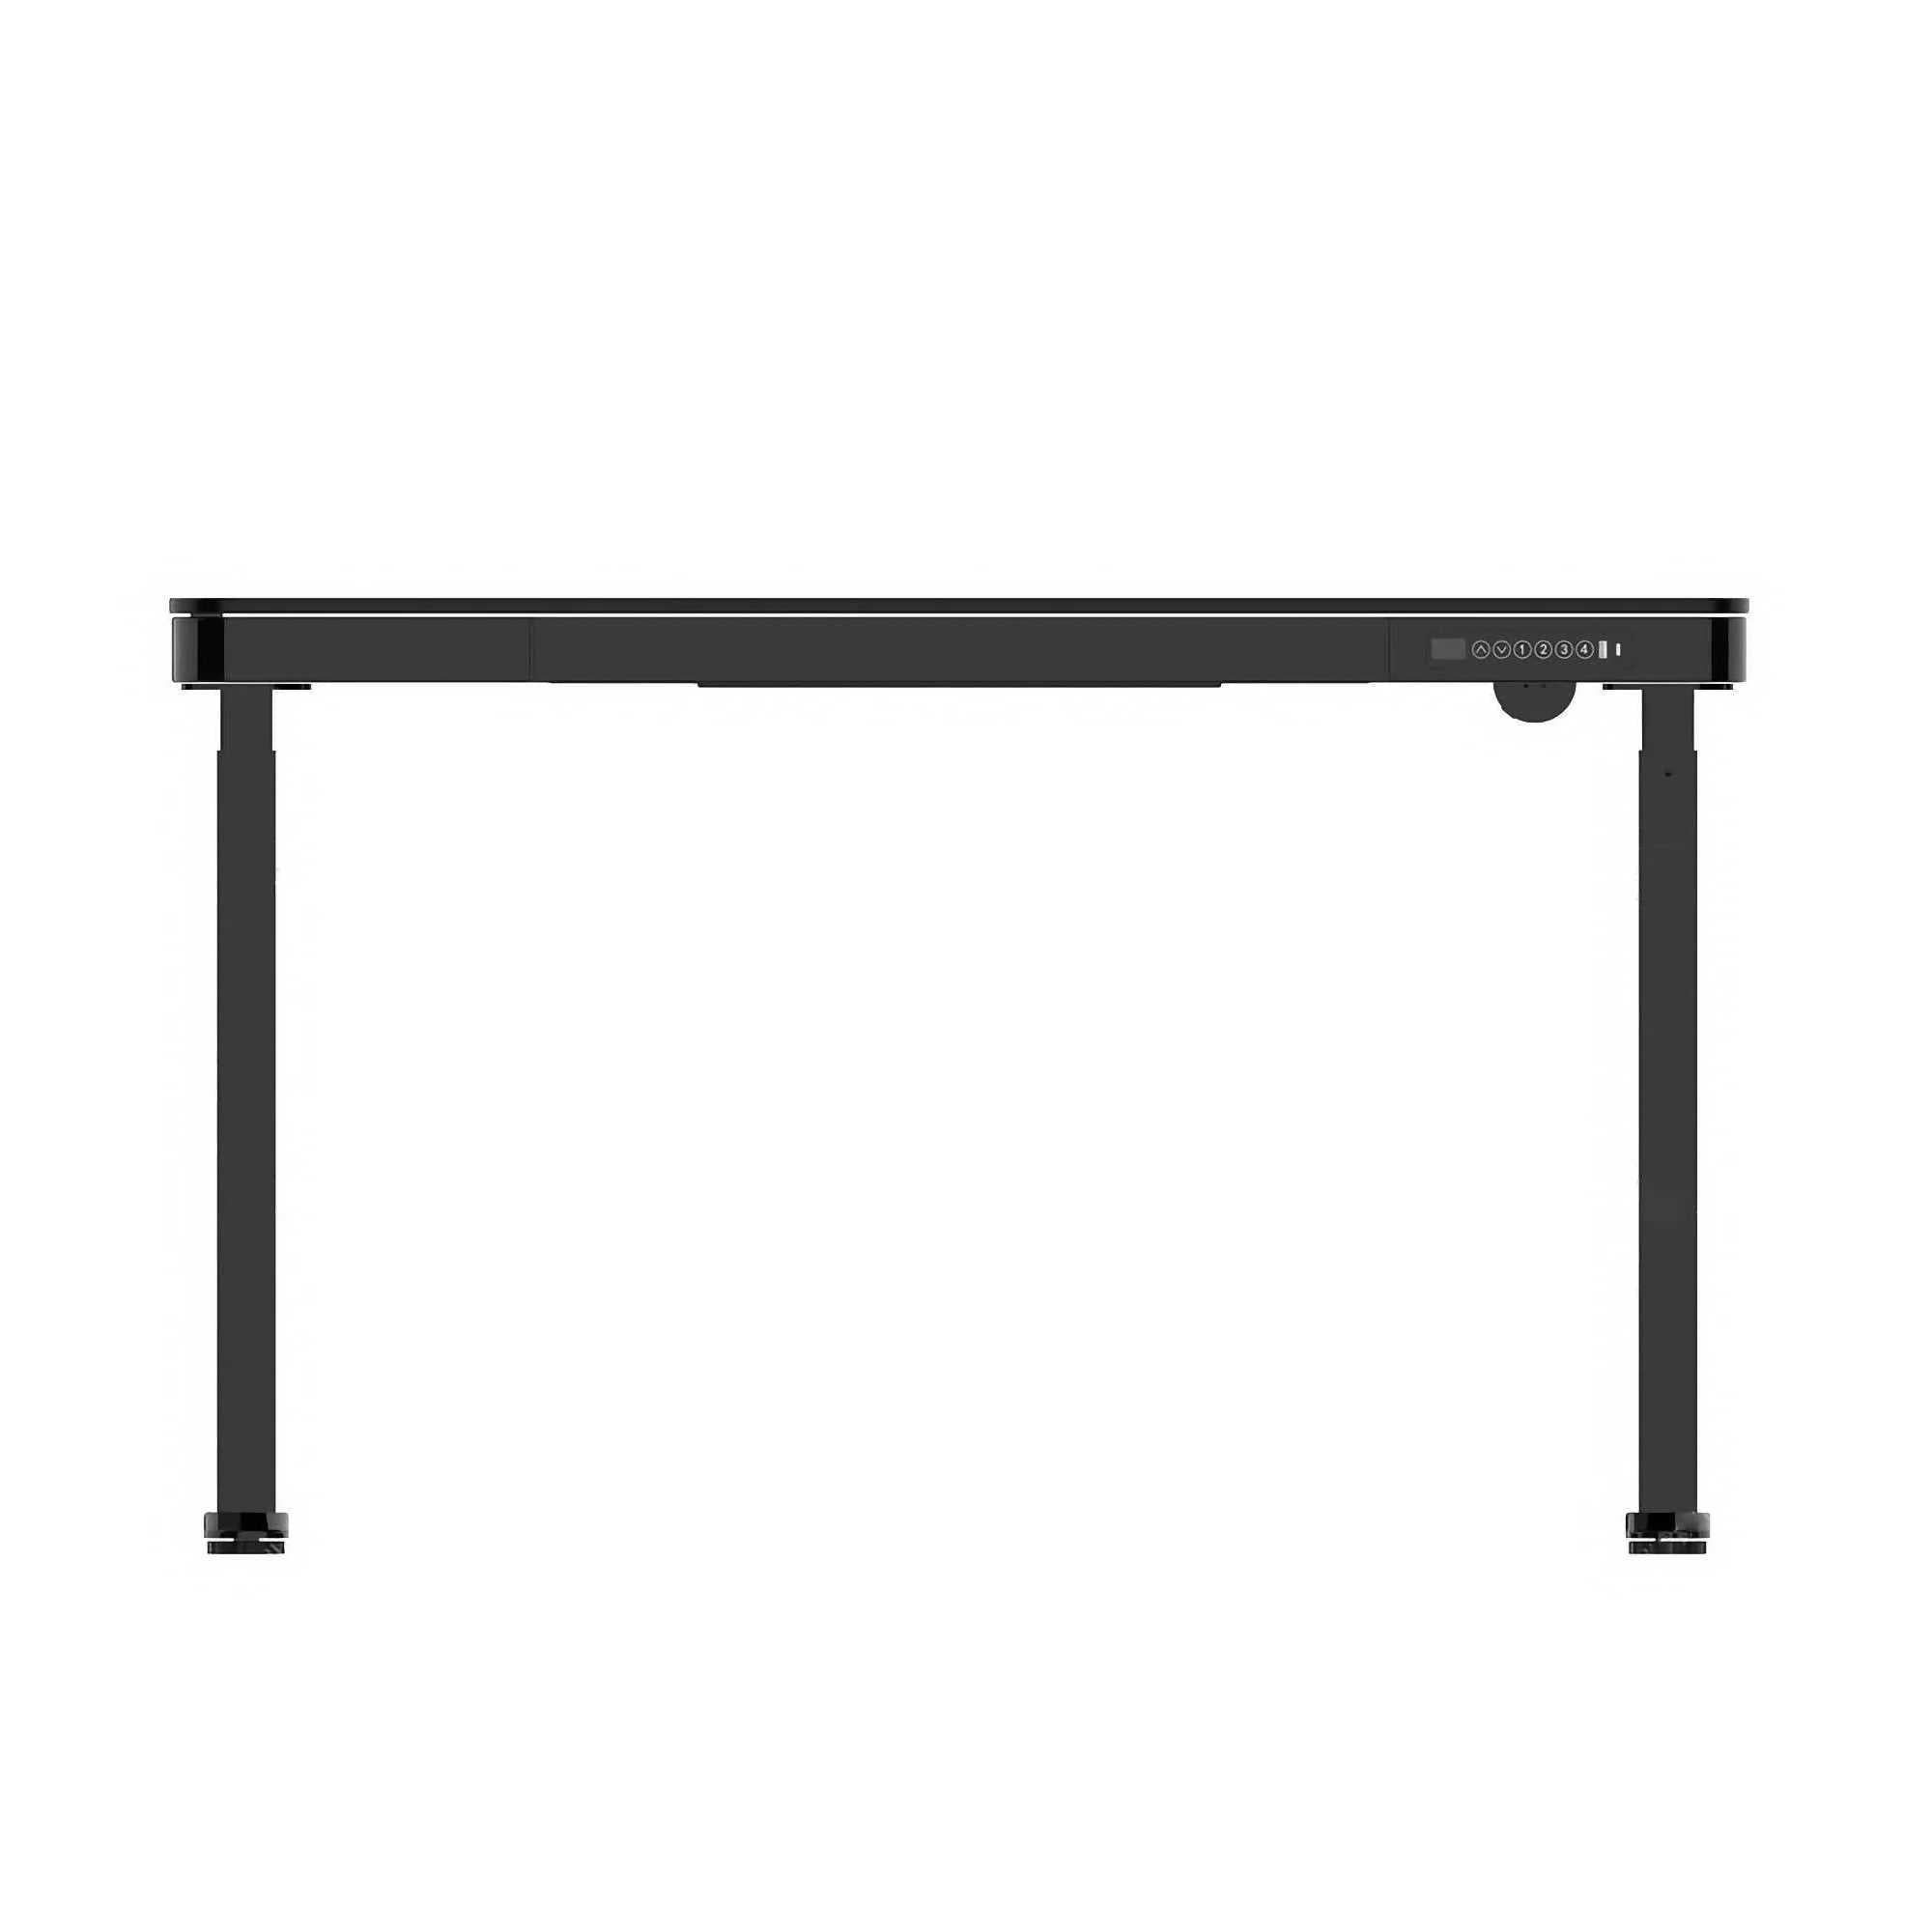 Liftek Electric Height Adjustable Desk, Black/Black